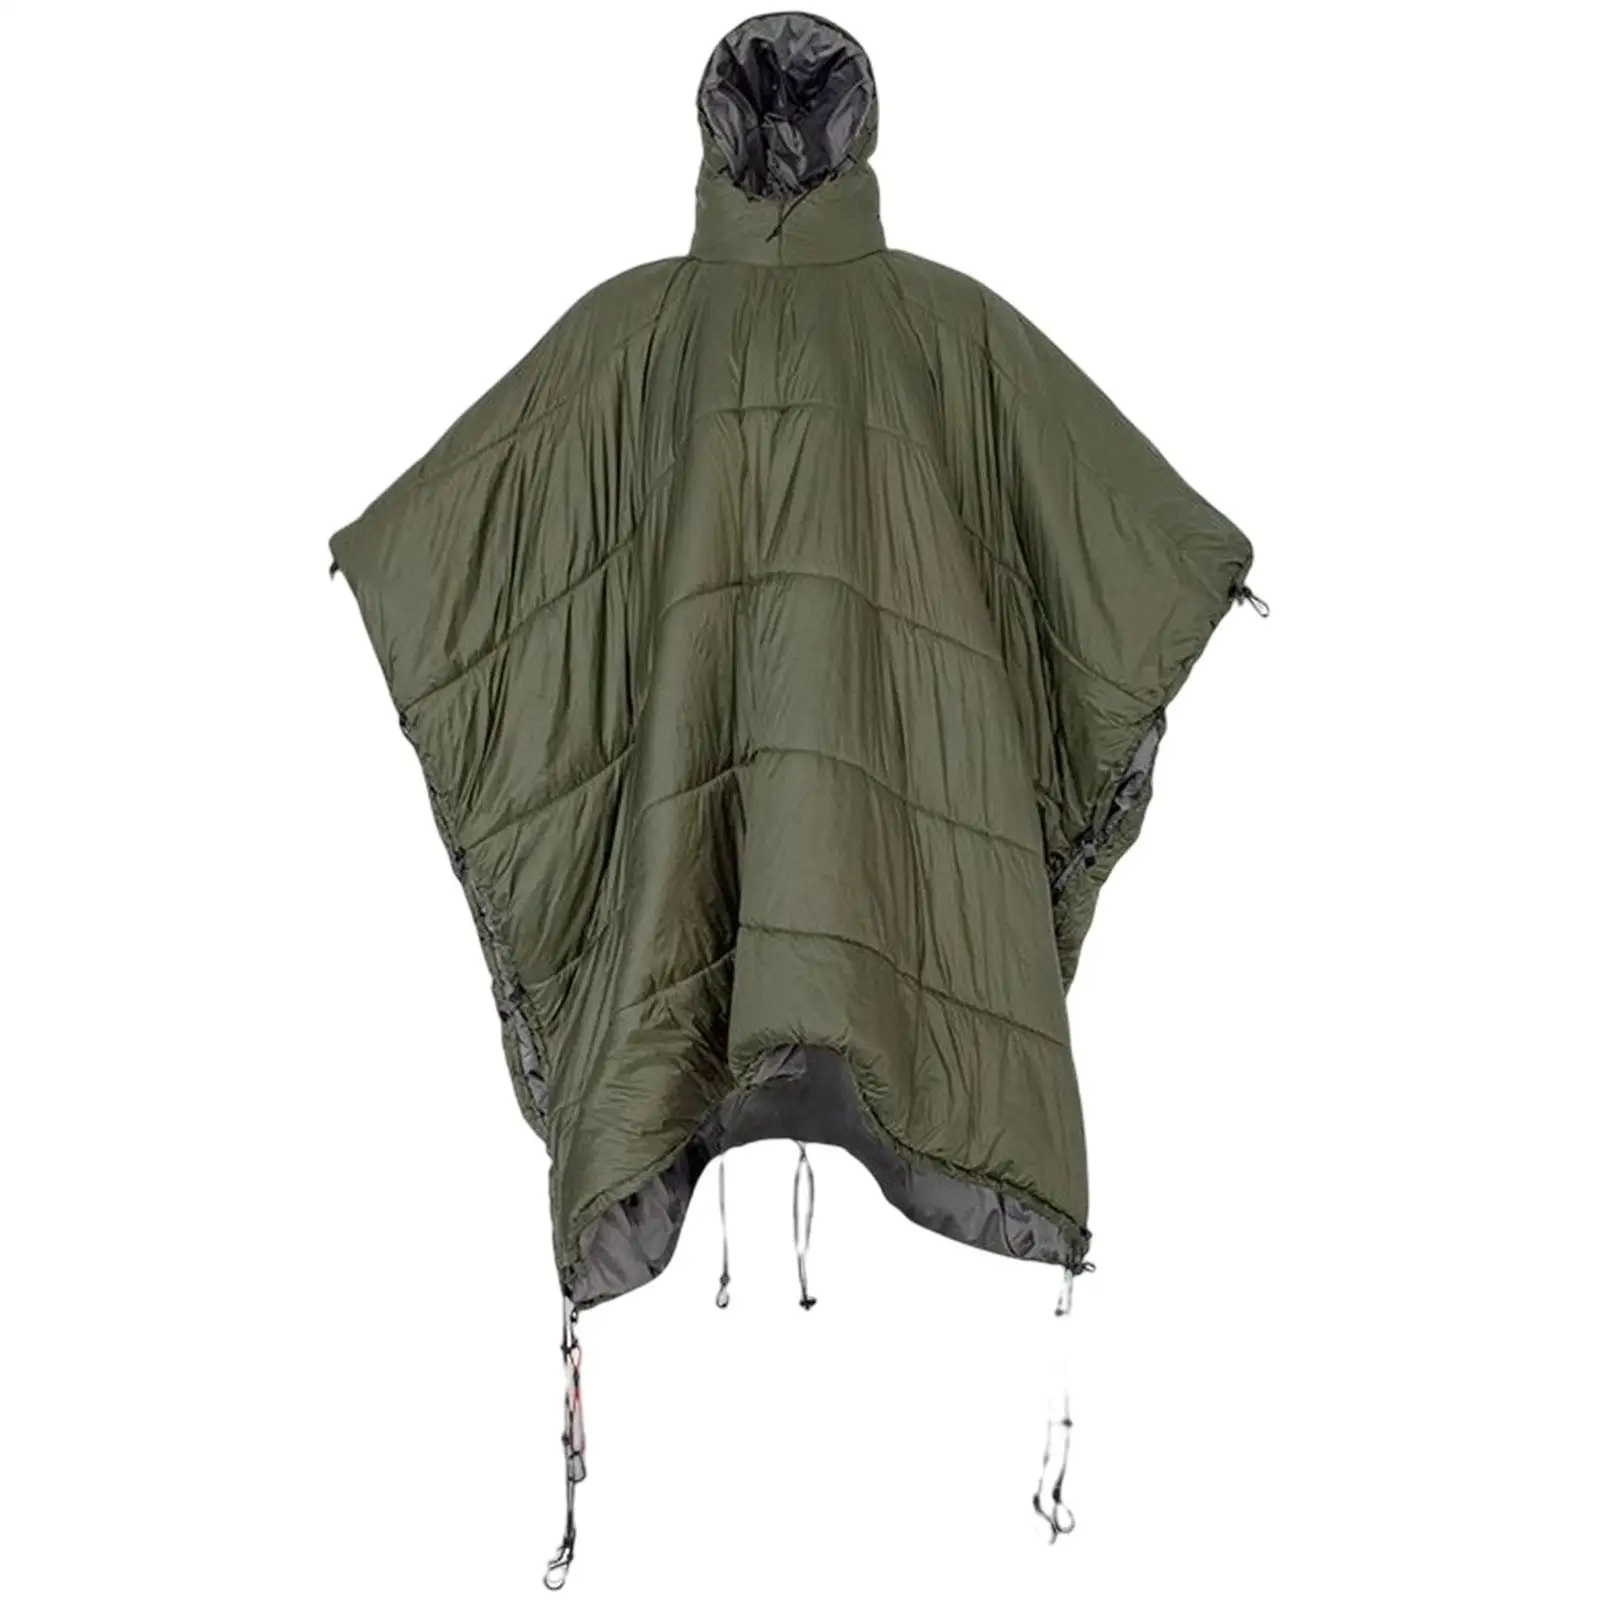 Portable Sleeping Bag Cloak Hooded Blanket Hammock Waterproof for